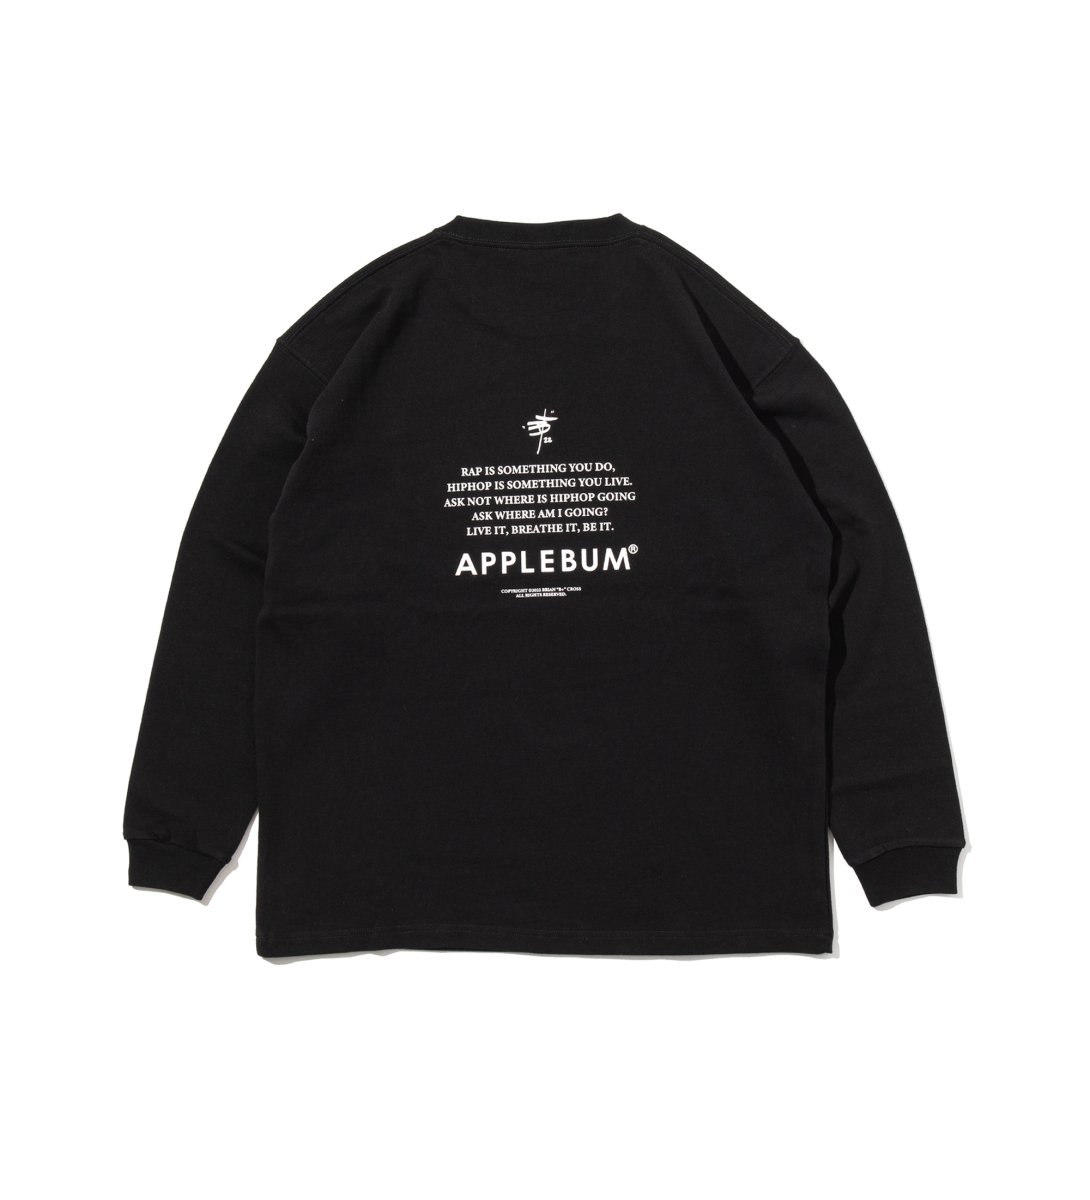 Applebum Snp L S T Shirts Applebum正規取扱いショップ